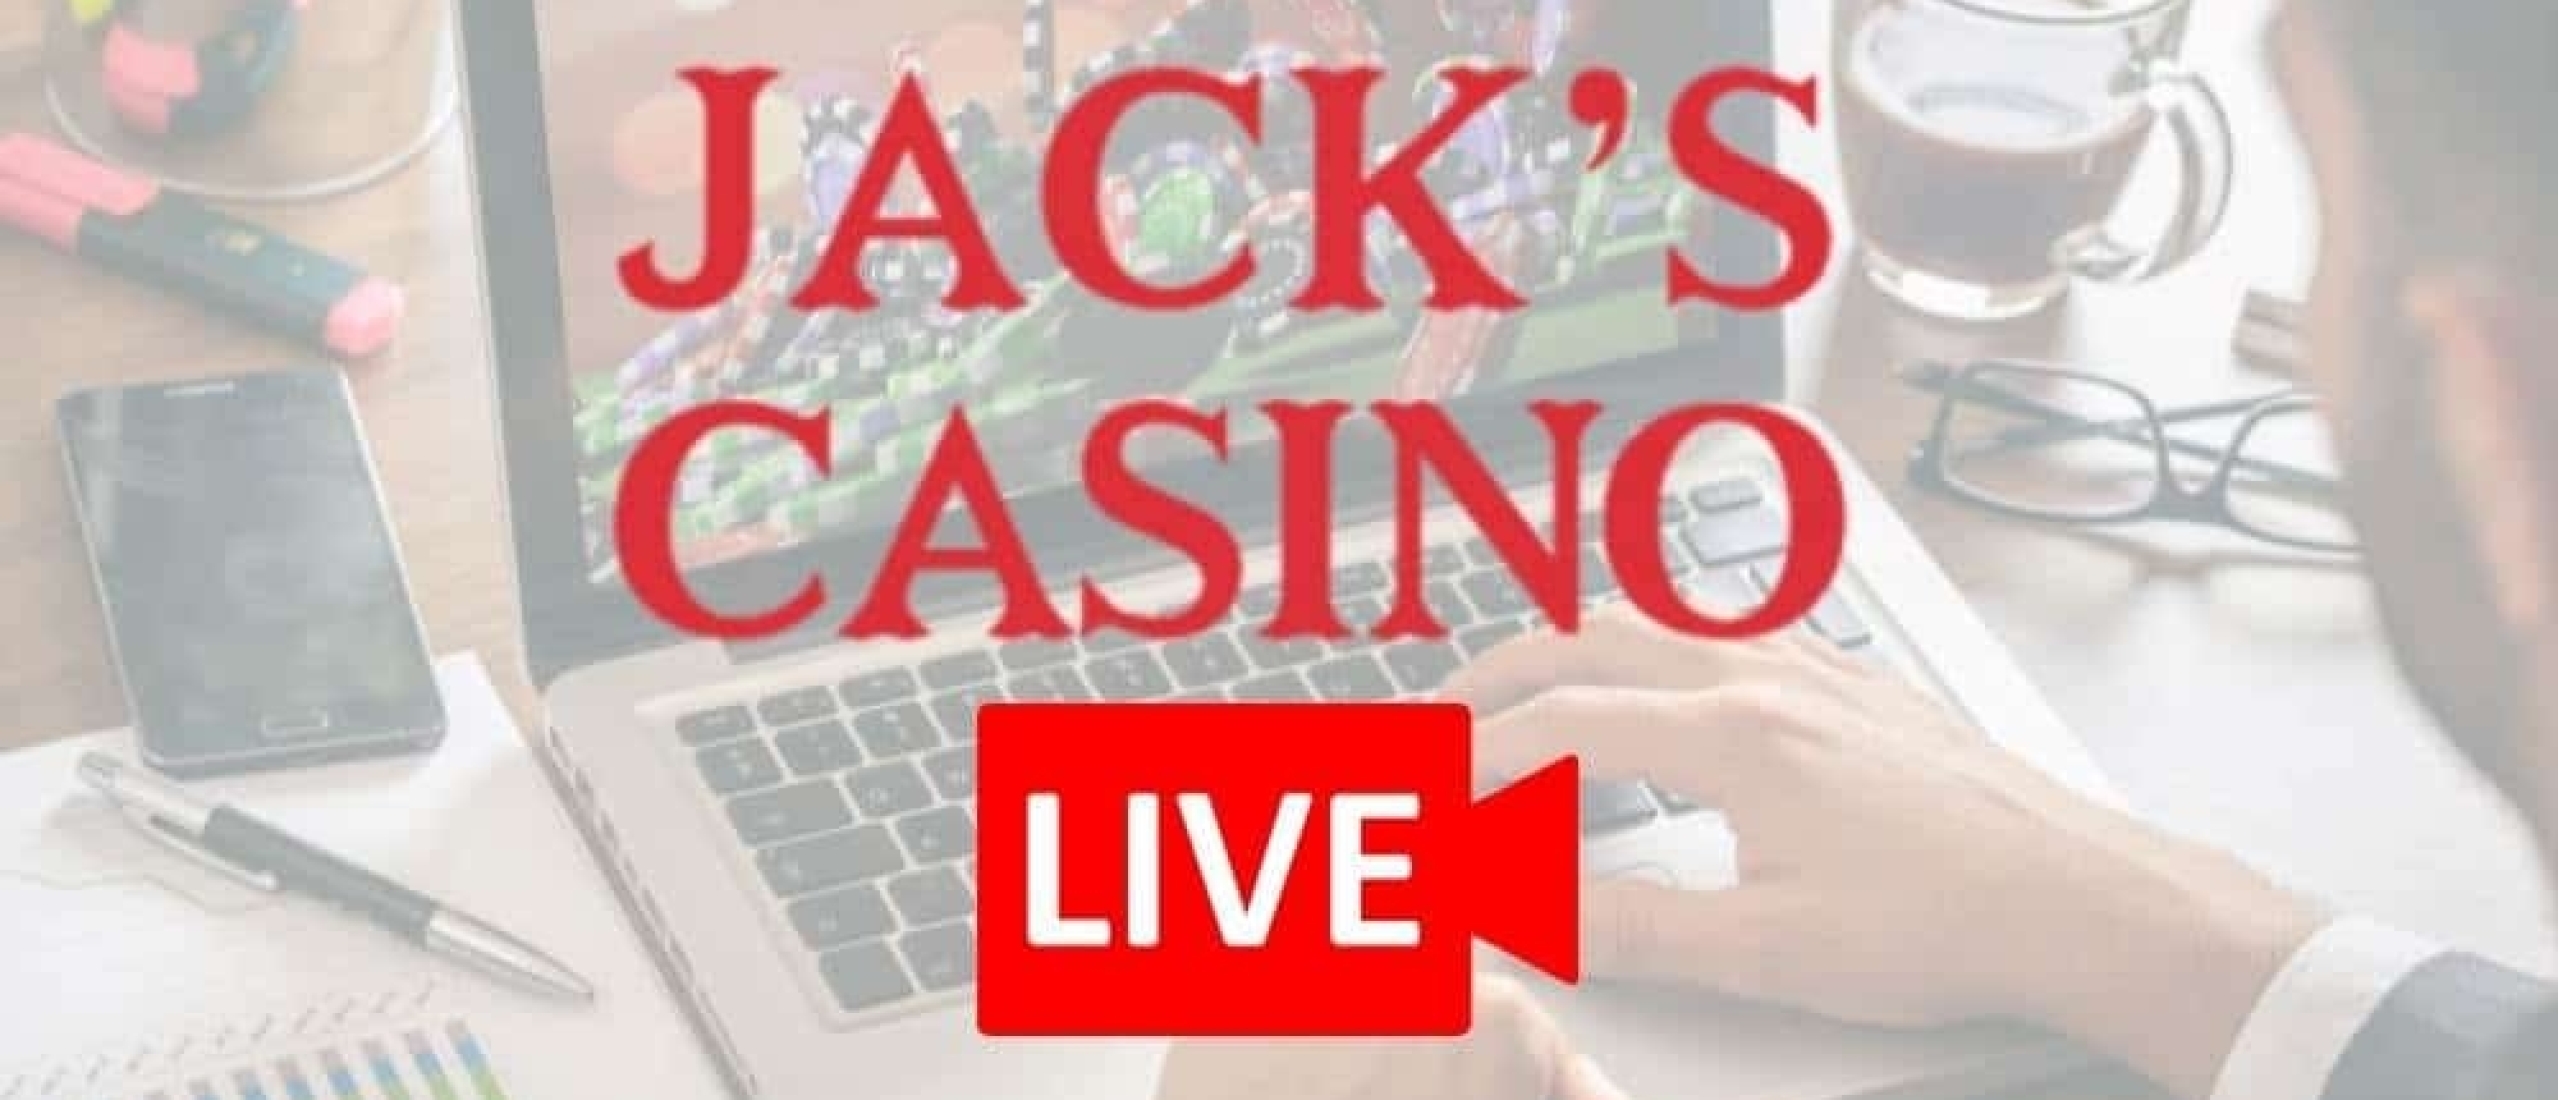 Maak kennis met Jacks Online.